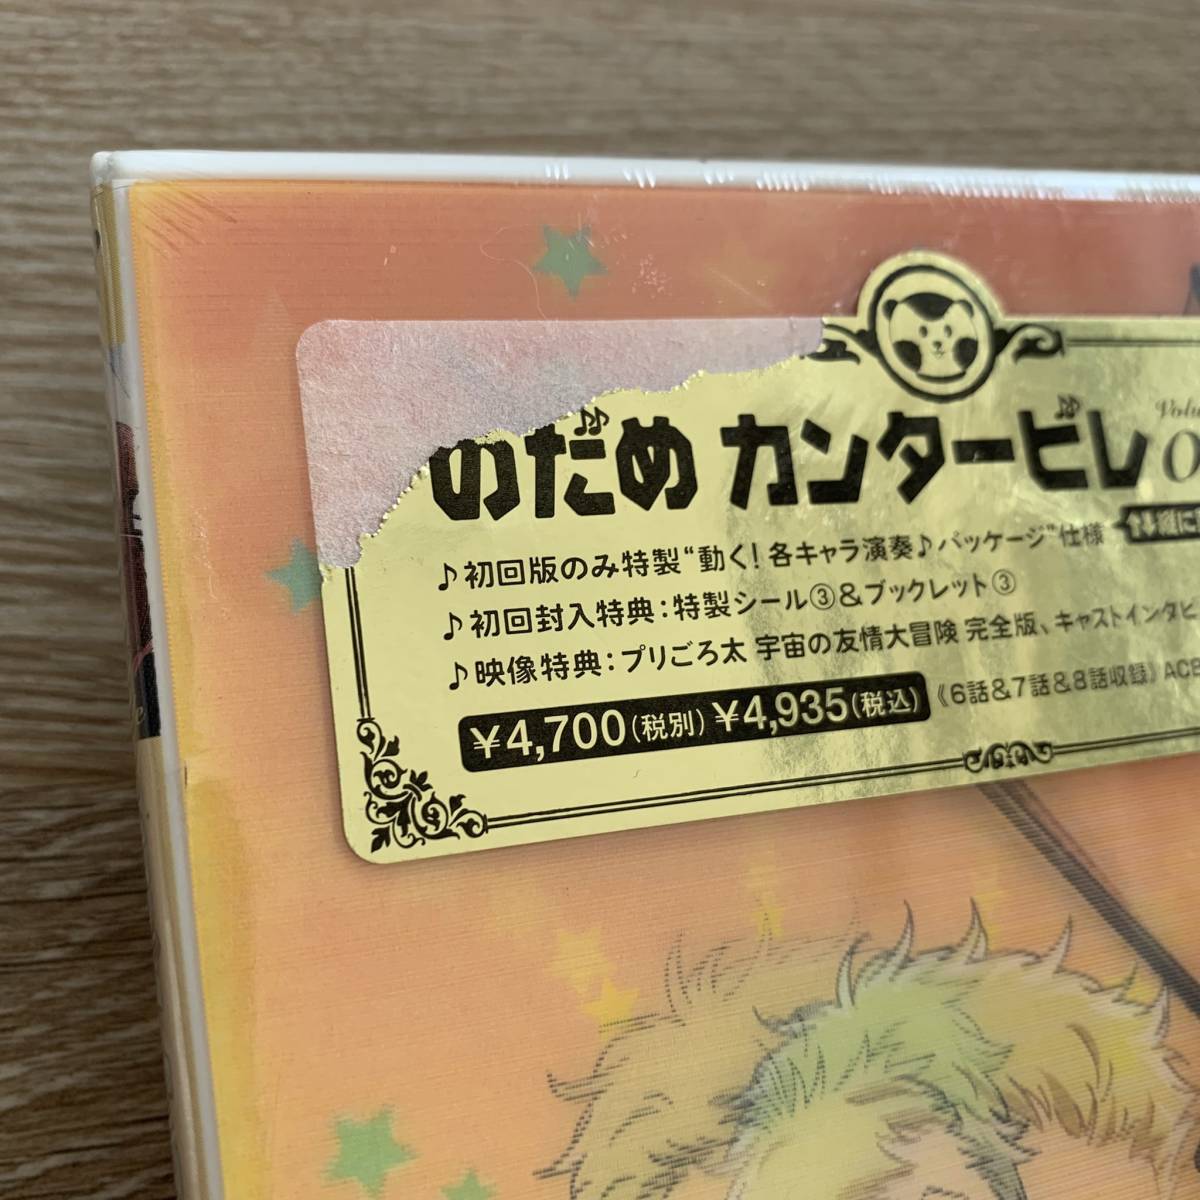 「のだめカンタービレ VOL.3〈初回限定生産〉」新品未開封DVD